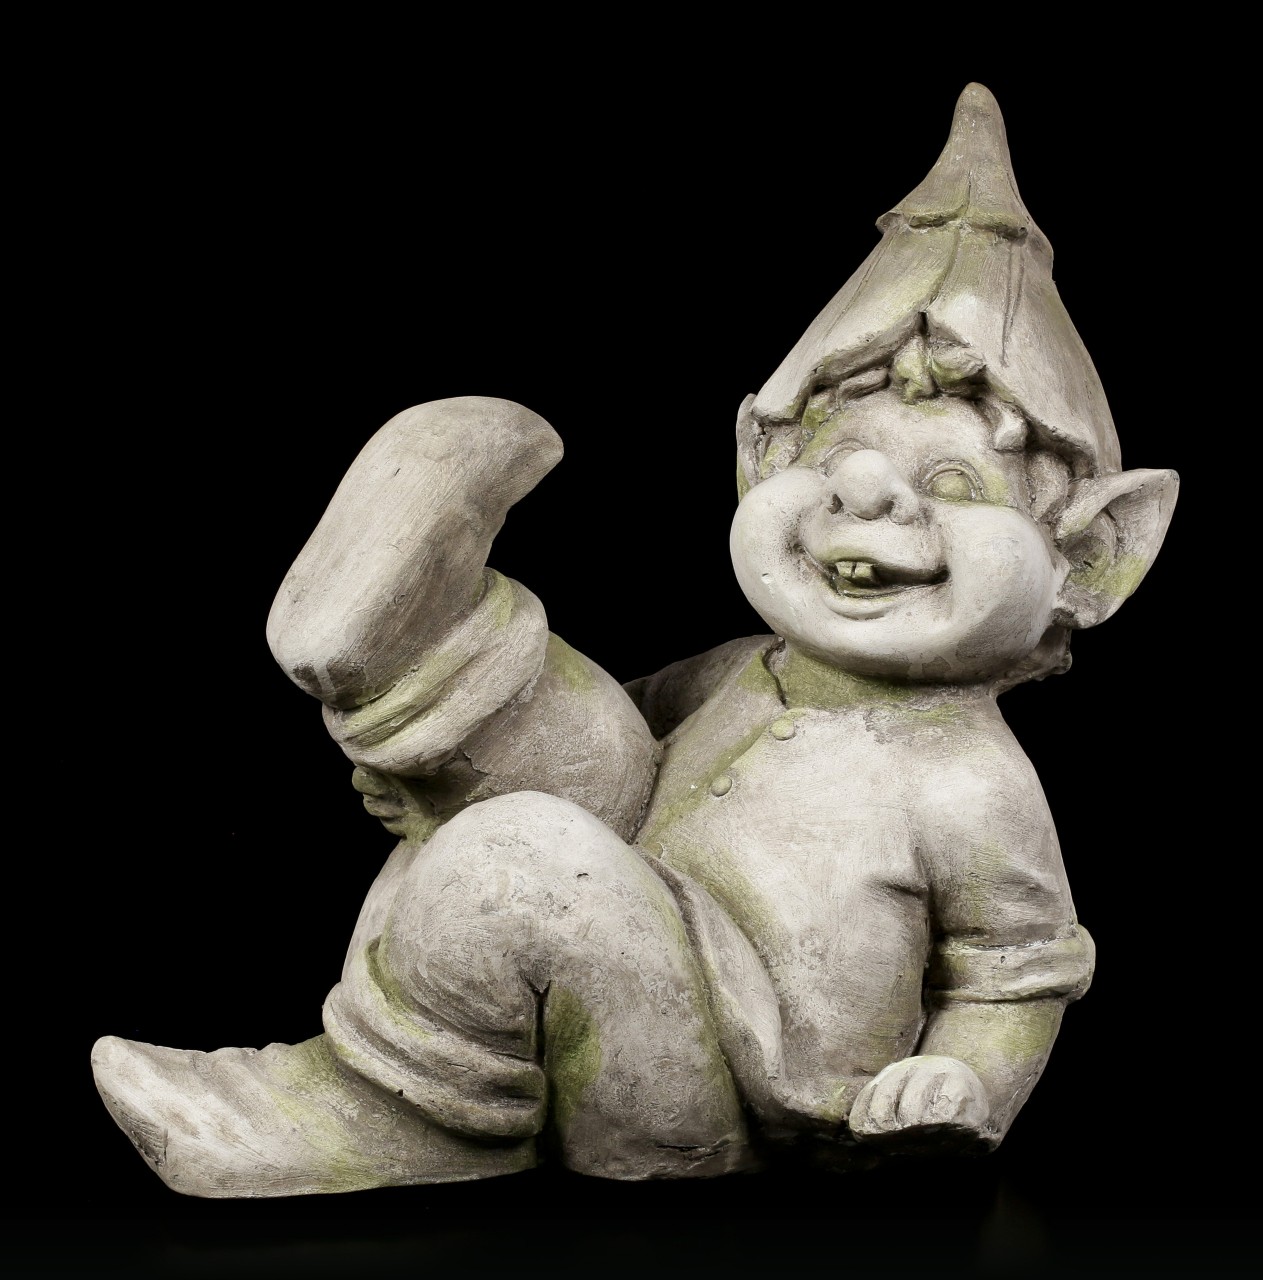 Troll Gartenfigur - Am Boden lachend